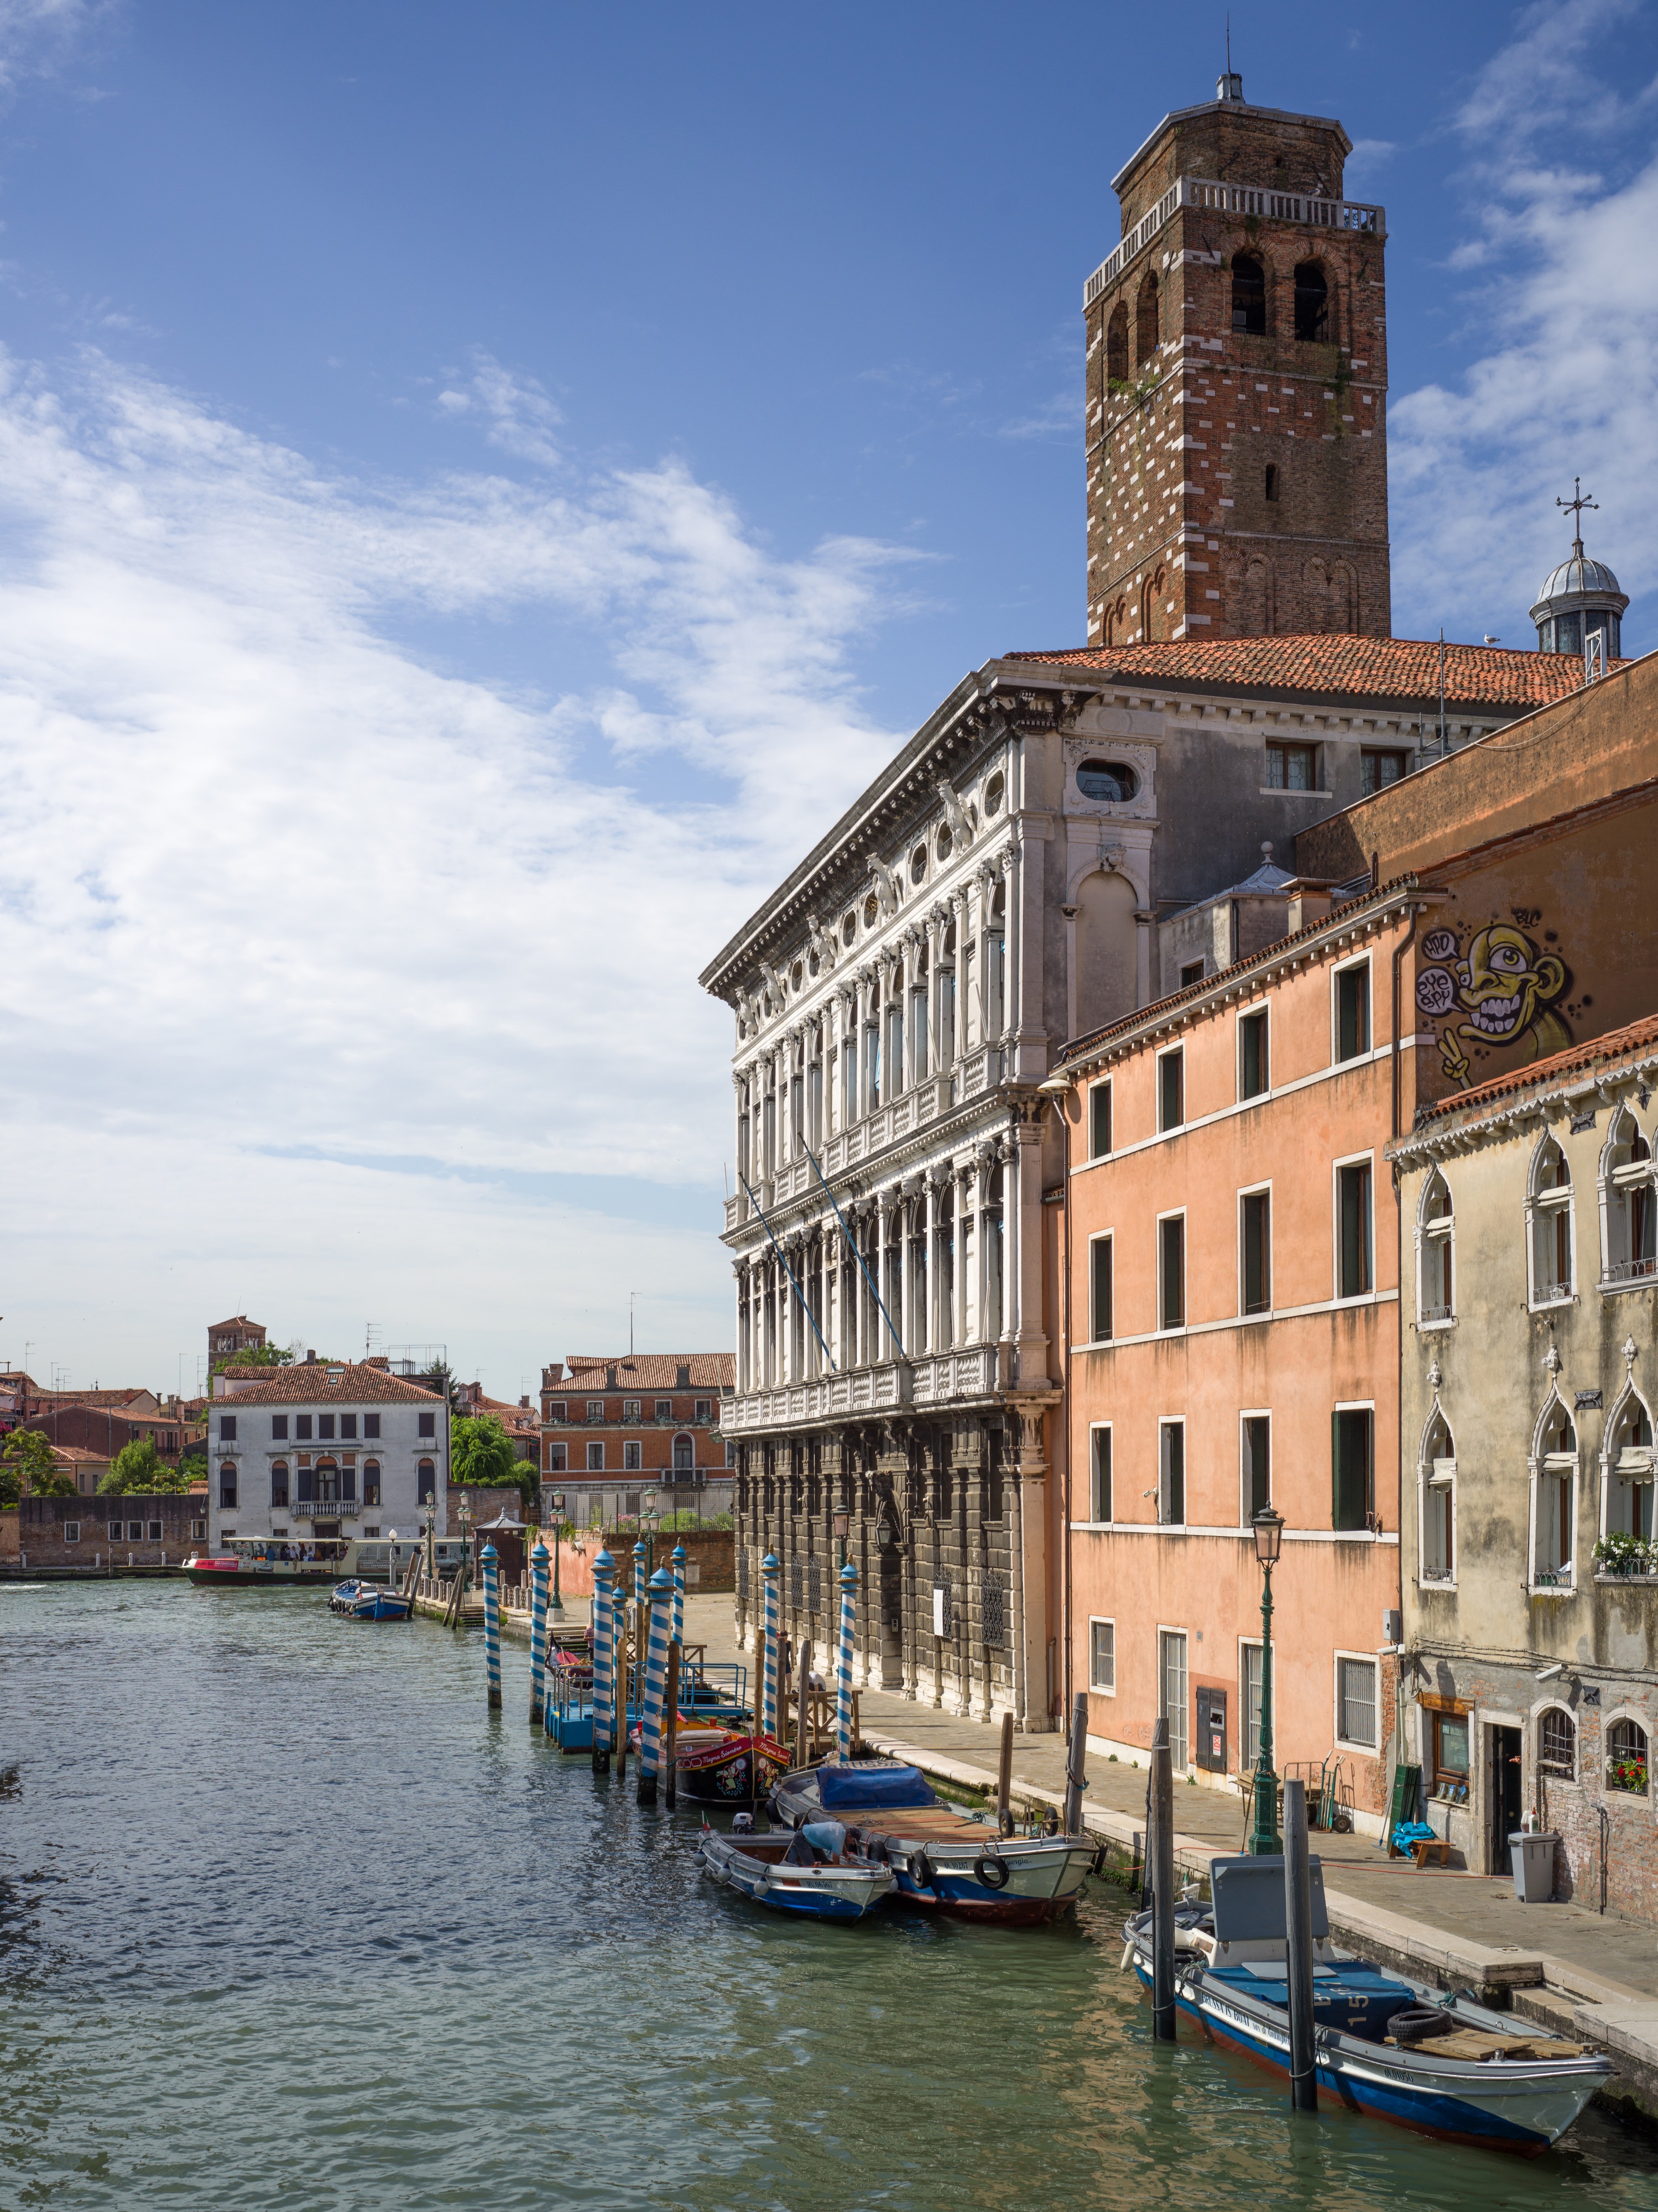 Palazzo Labia in Venice on the Cannaregio canal